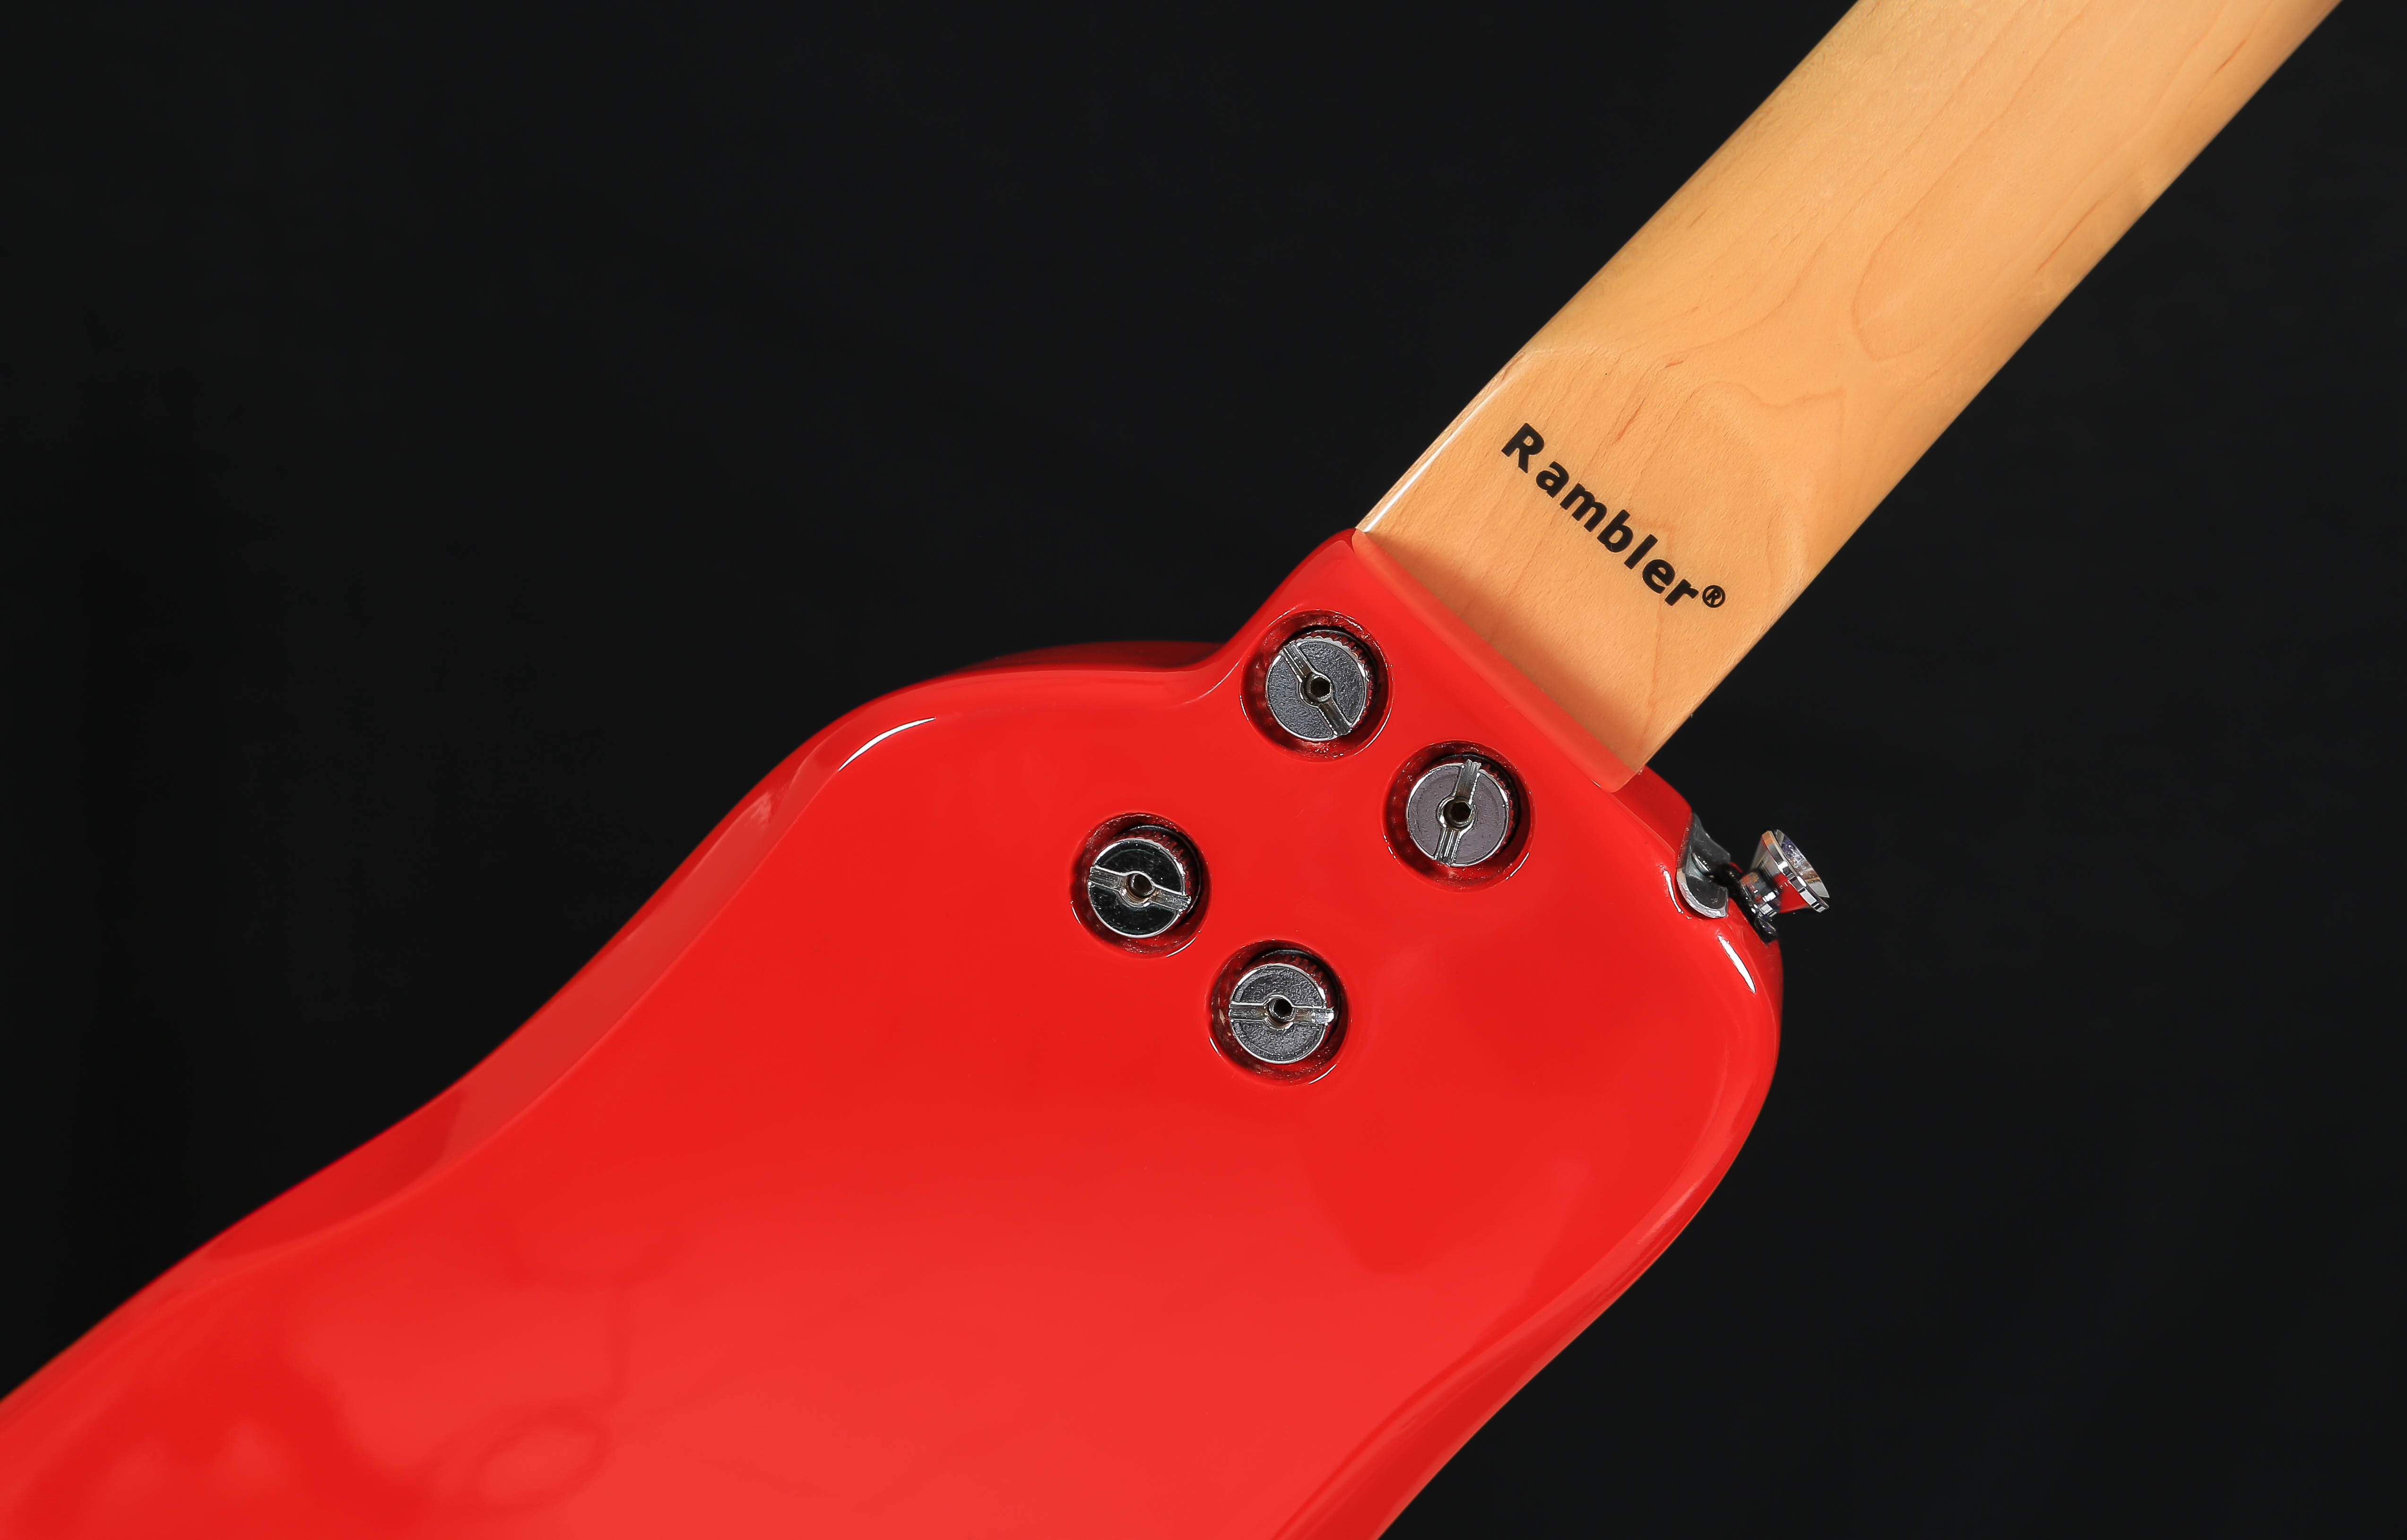 Dakota Red STROBELCASTER Travel Guitar with Detachable Neck